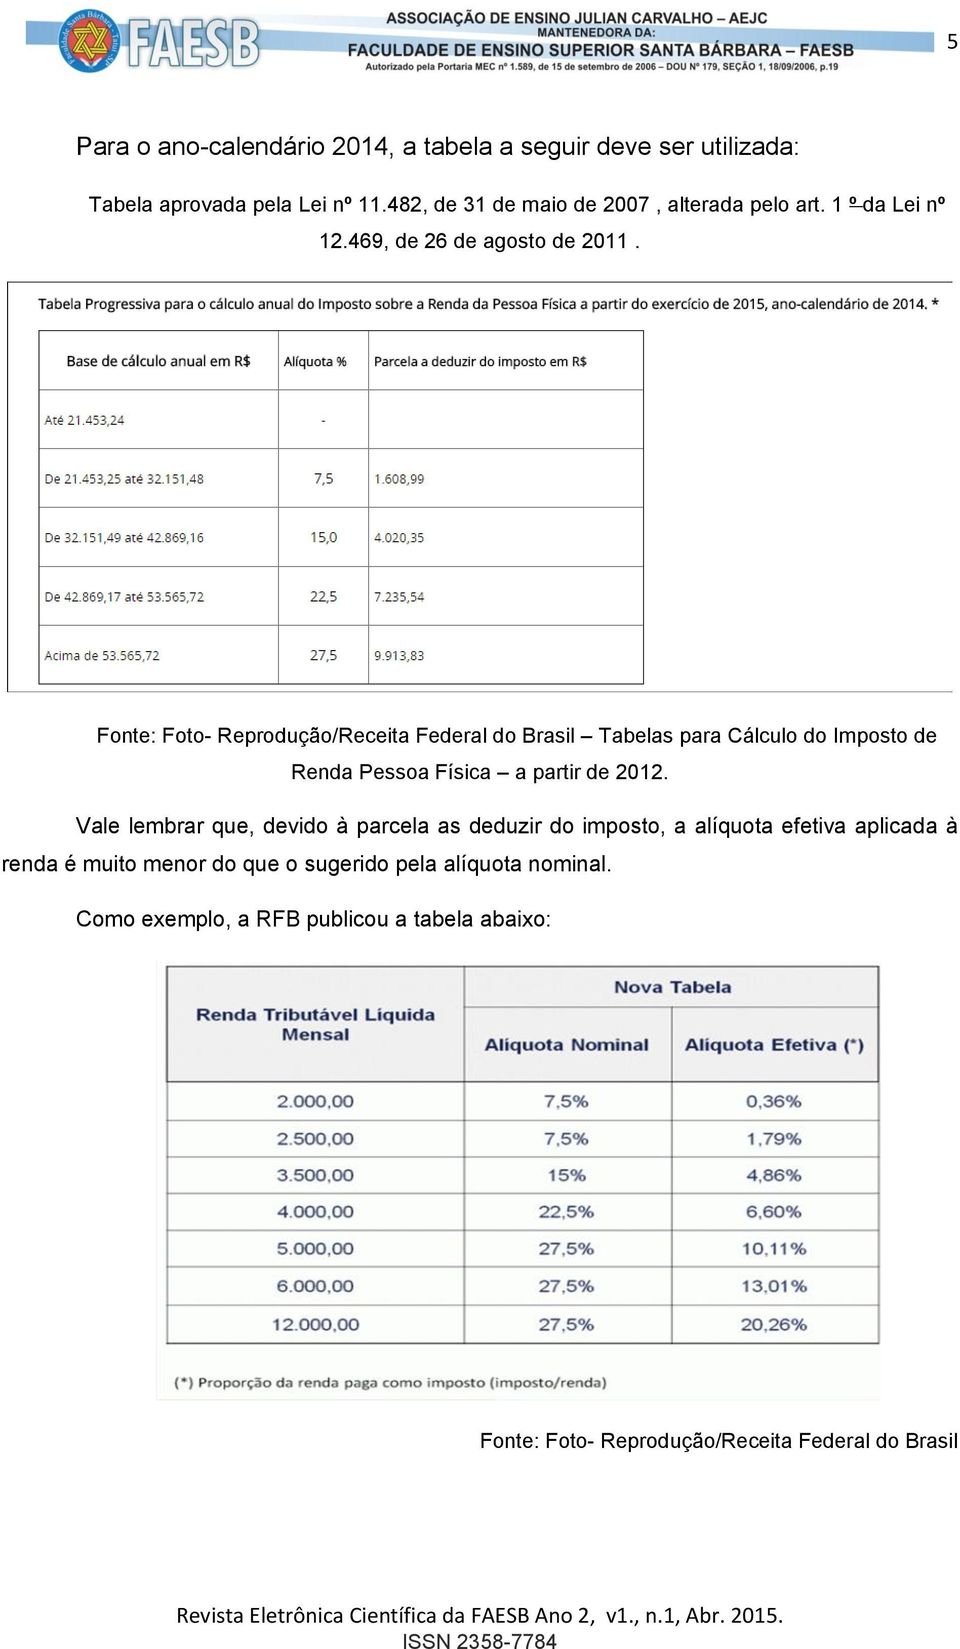 Fonte: Foto- Reprodução/Receita Federal do Brasil Tabelas para Cálculo do Imposto de Renda Pessoa Física a partir de 2012.